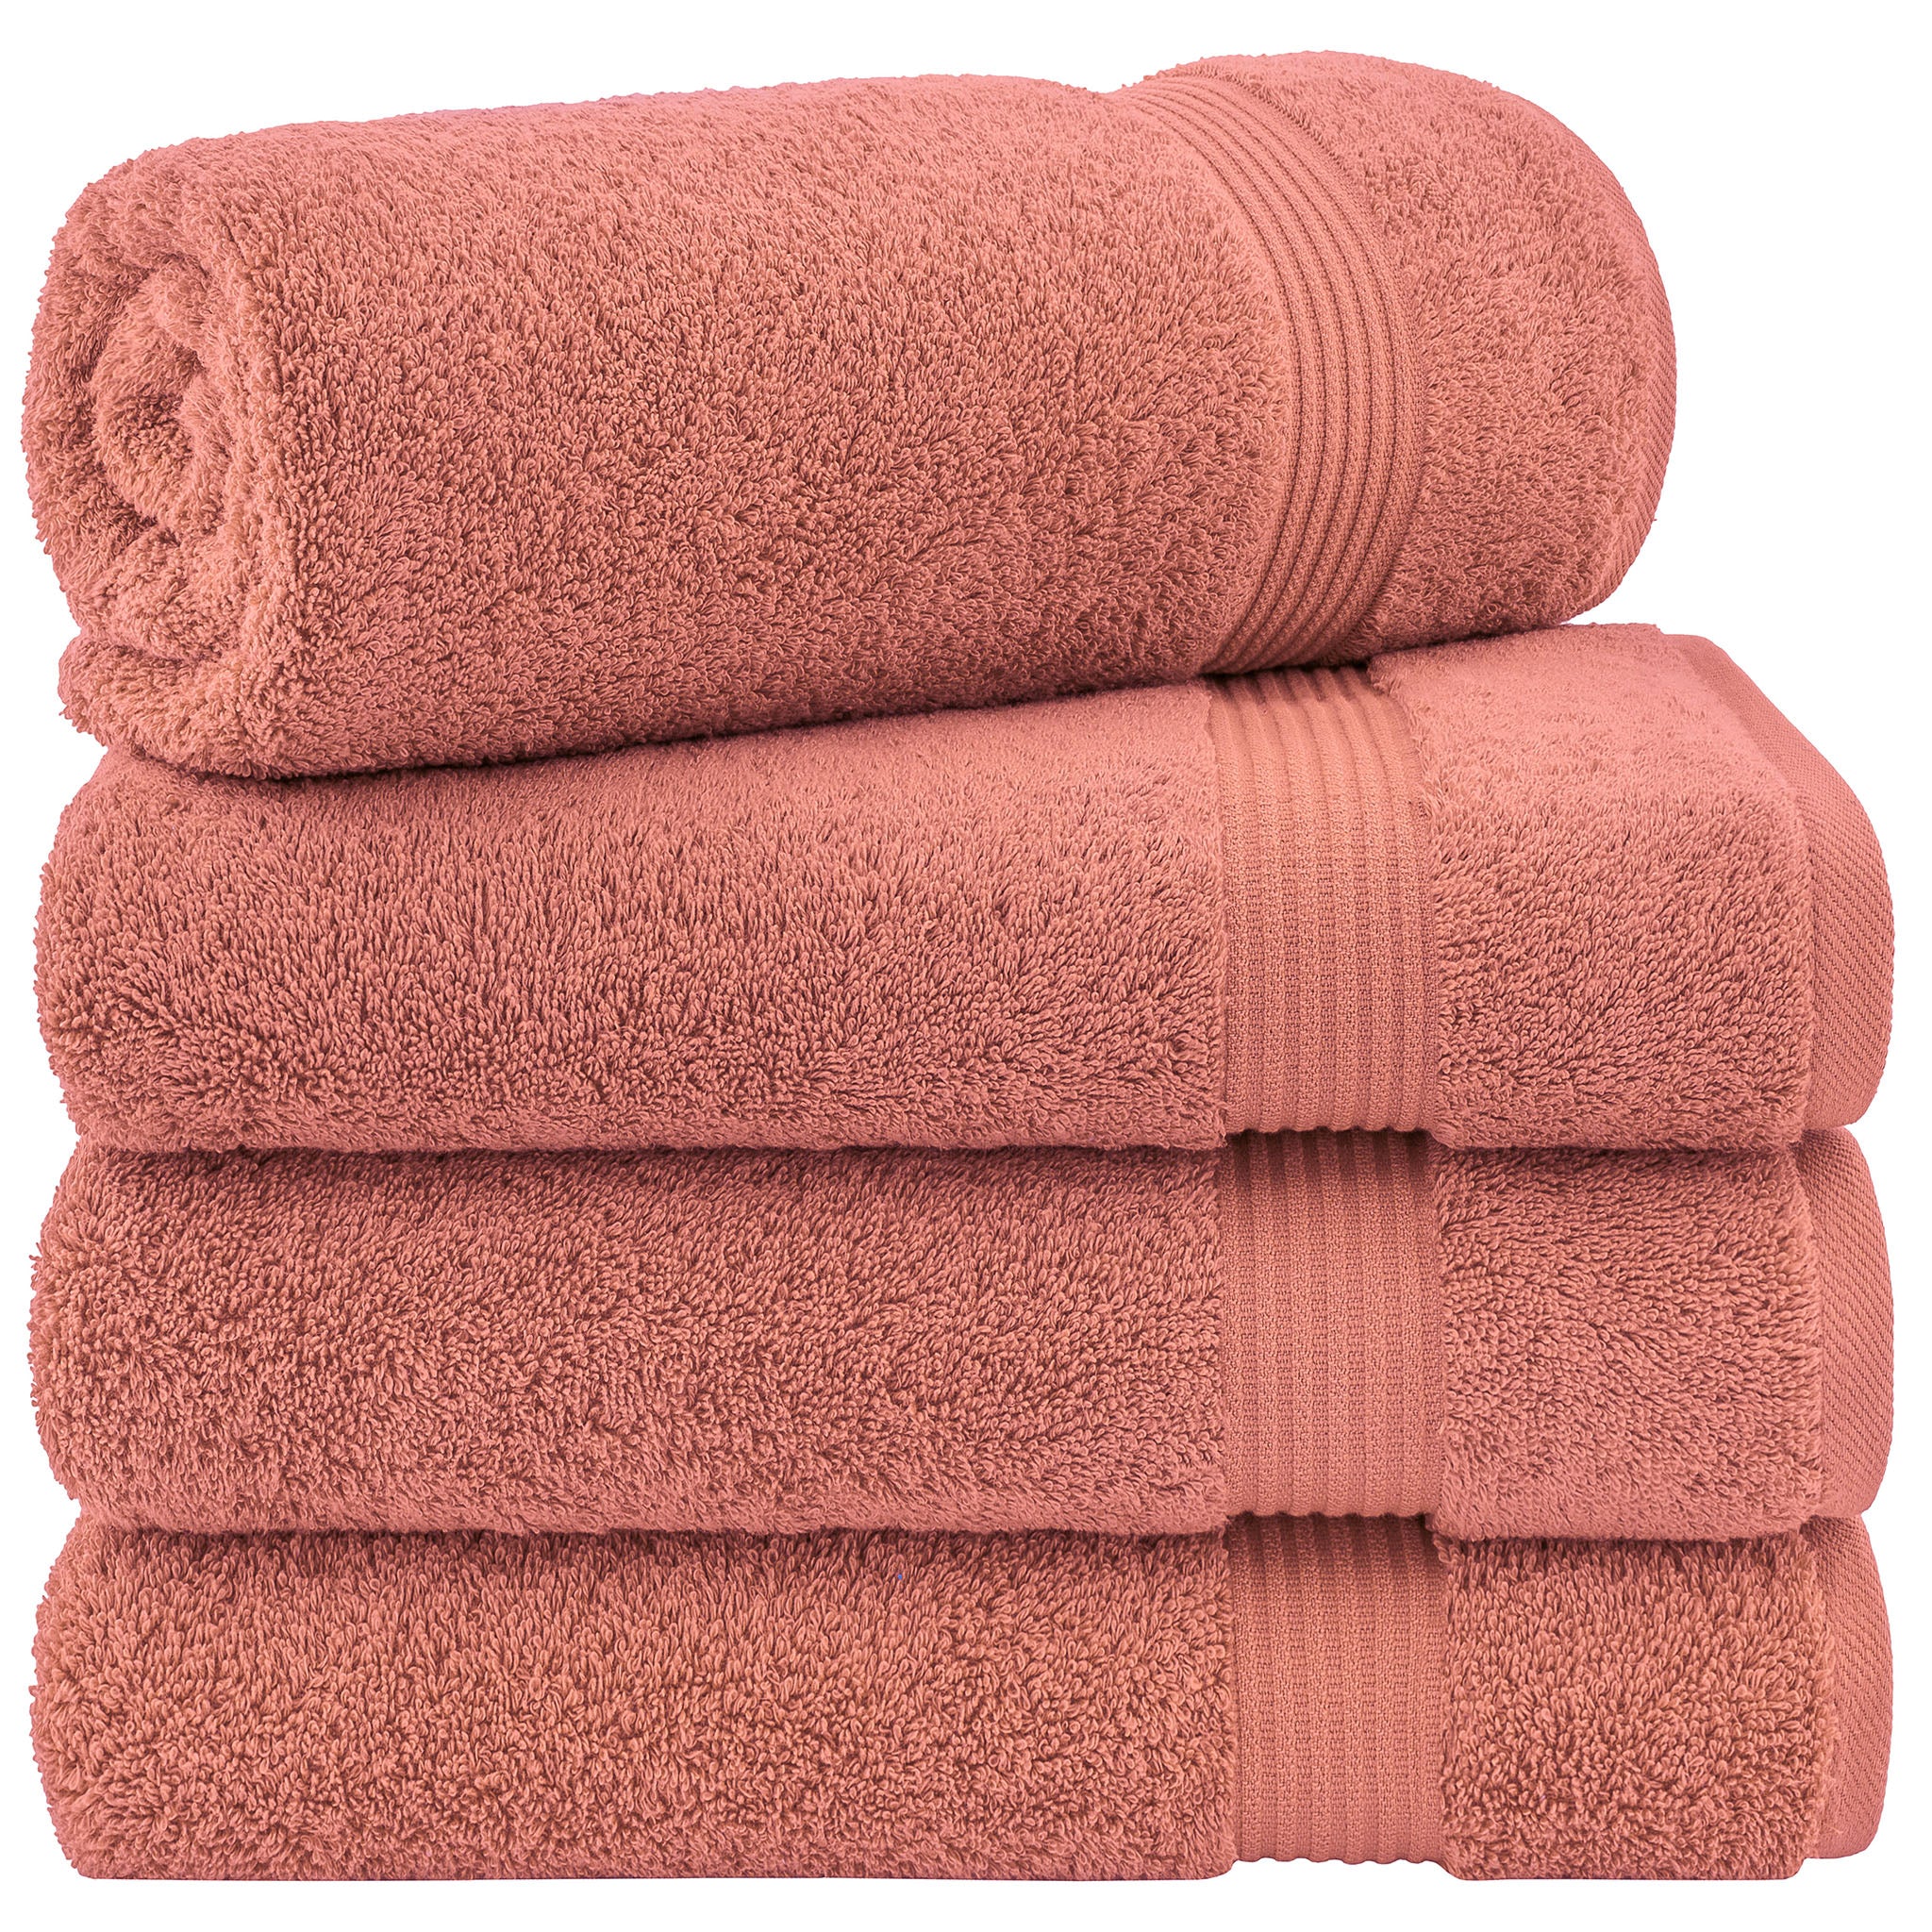 American Soft Linen Bekos 100% Cotton Turkish Towels, 4 Piece Bath Towel Set -coral-01